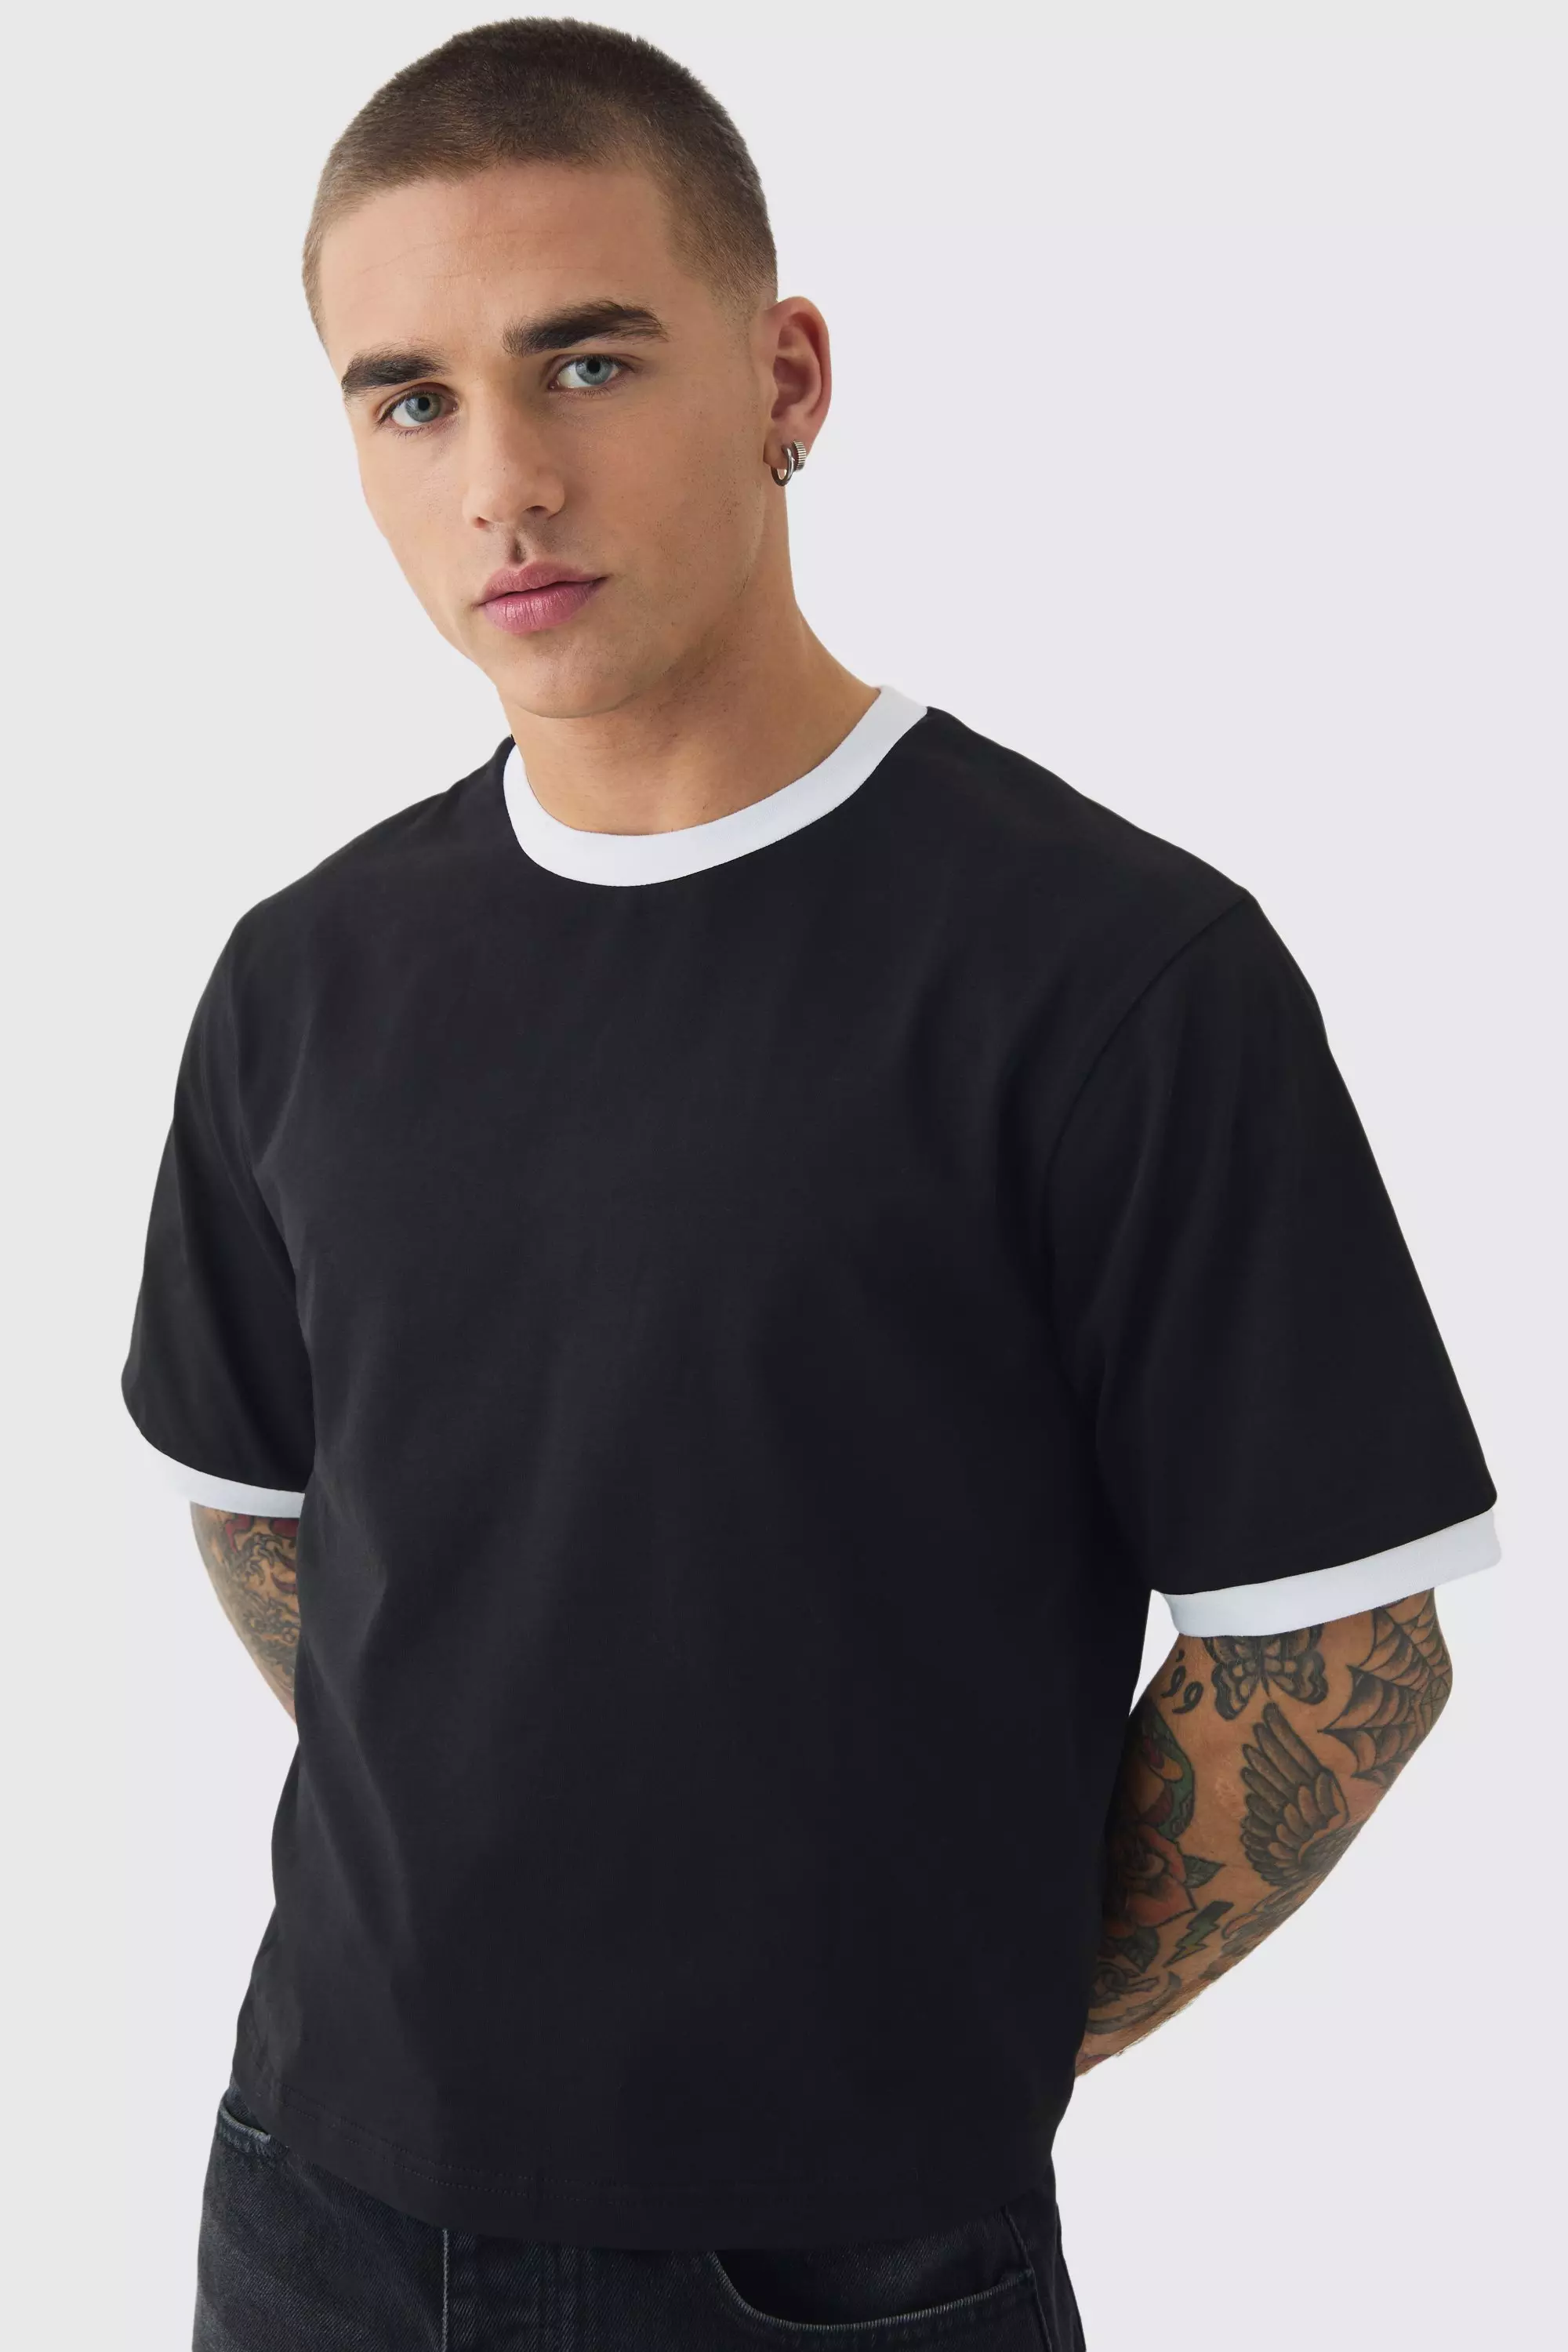 Ringer Neck Baby T-shirt Black